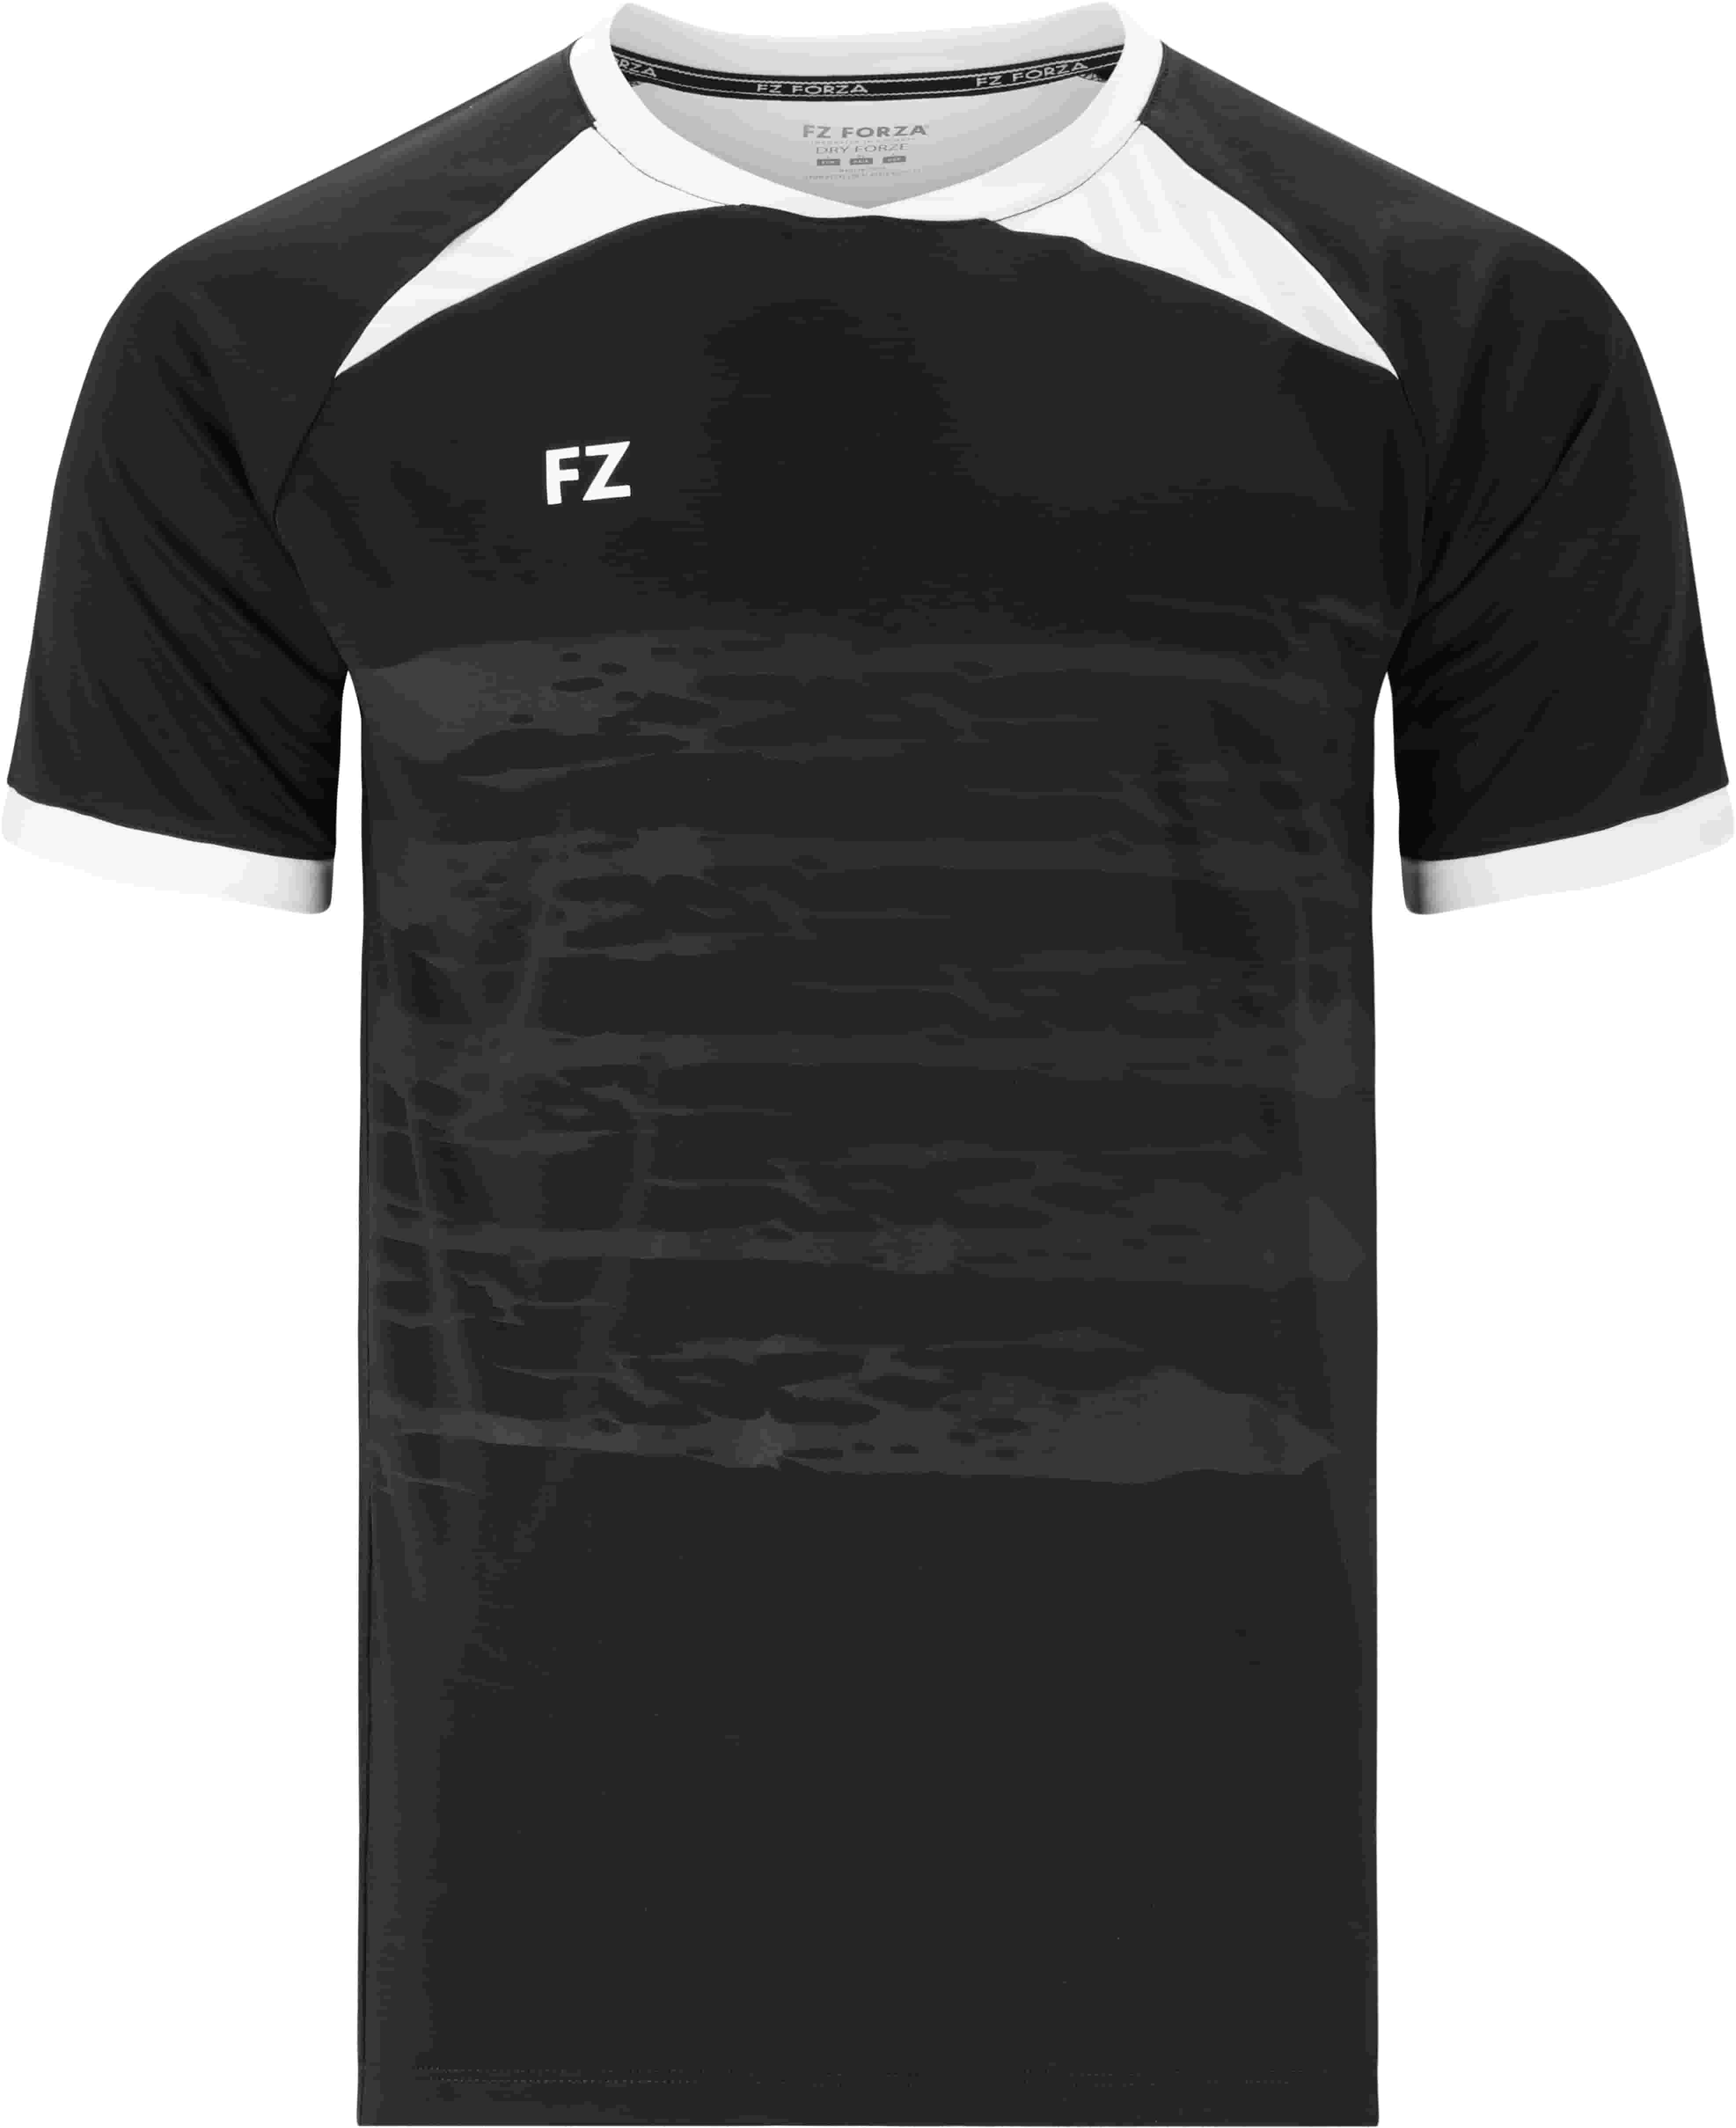 FZ FORZA Agentin M T-Shirt - Schwarz 8